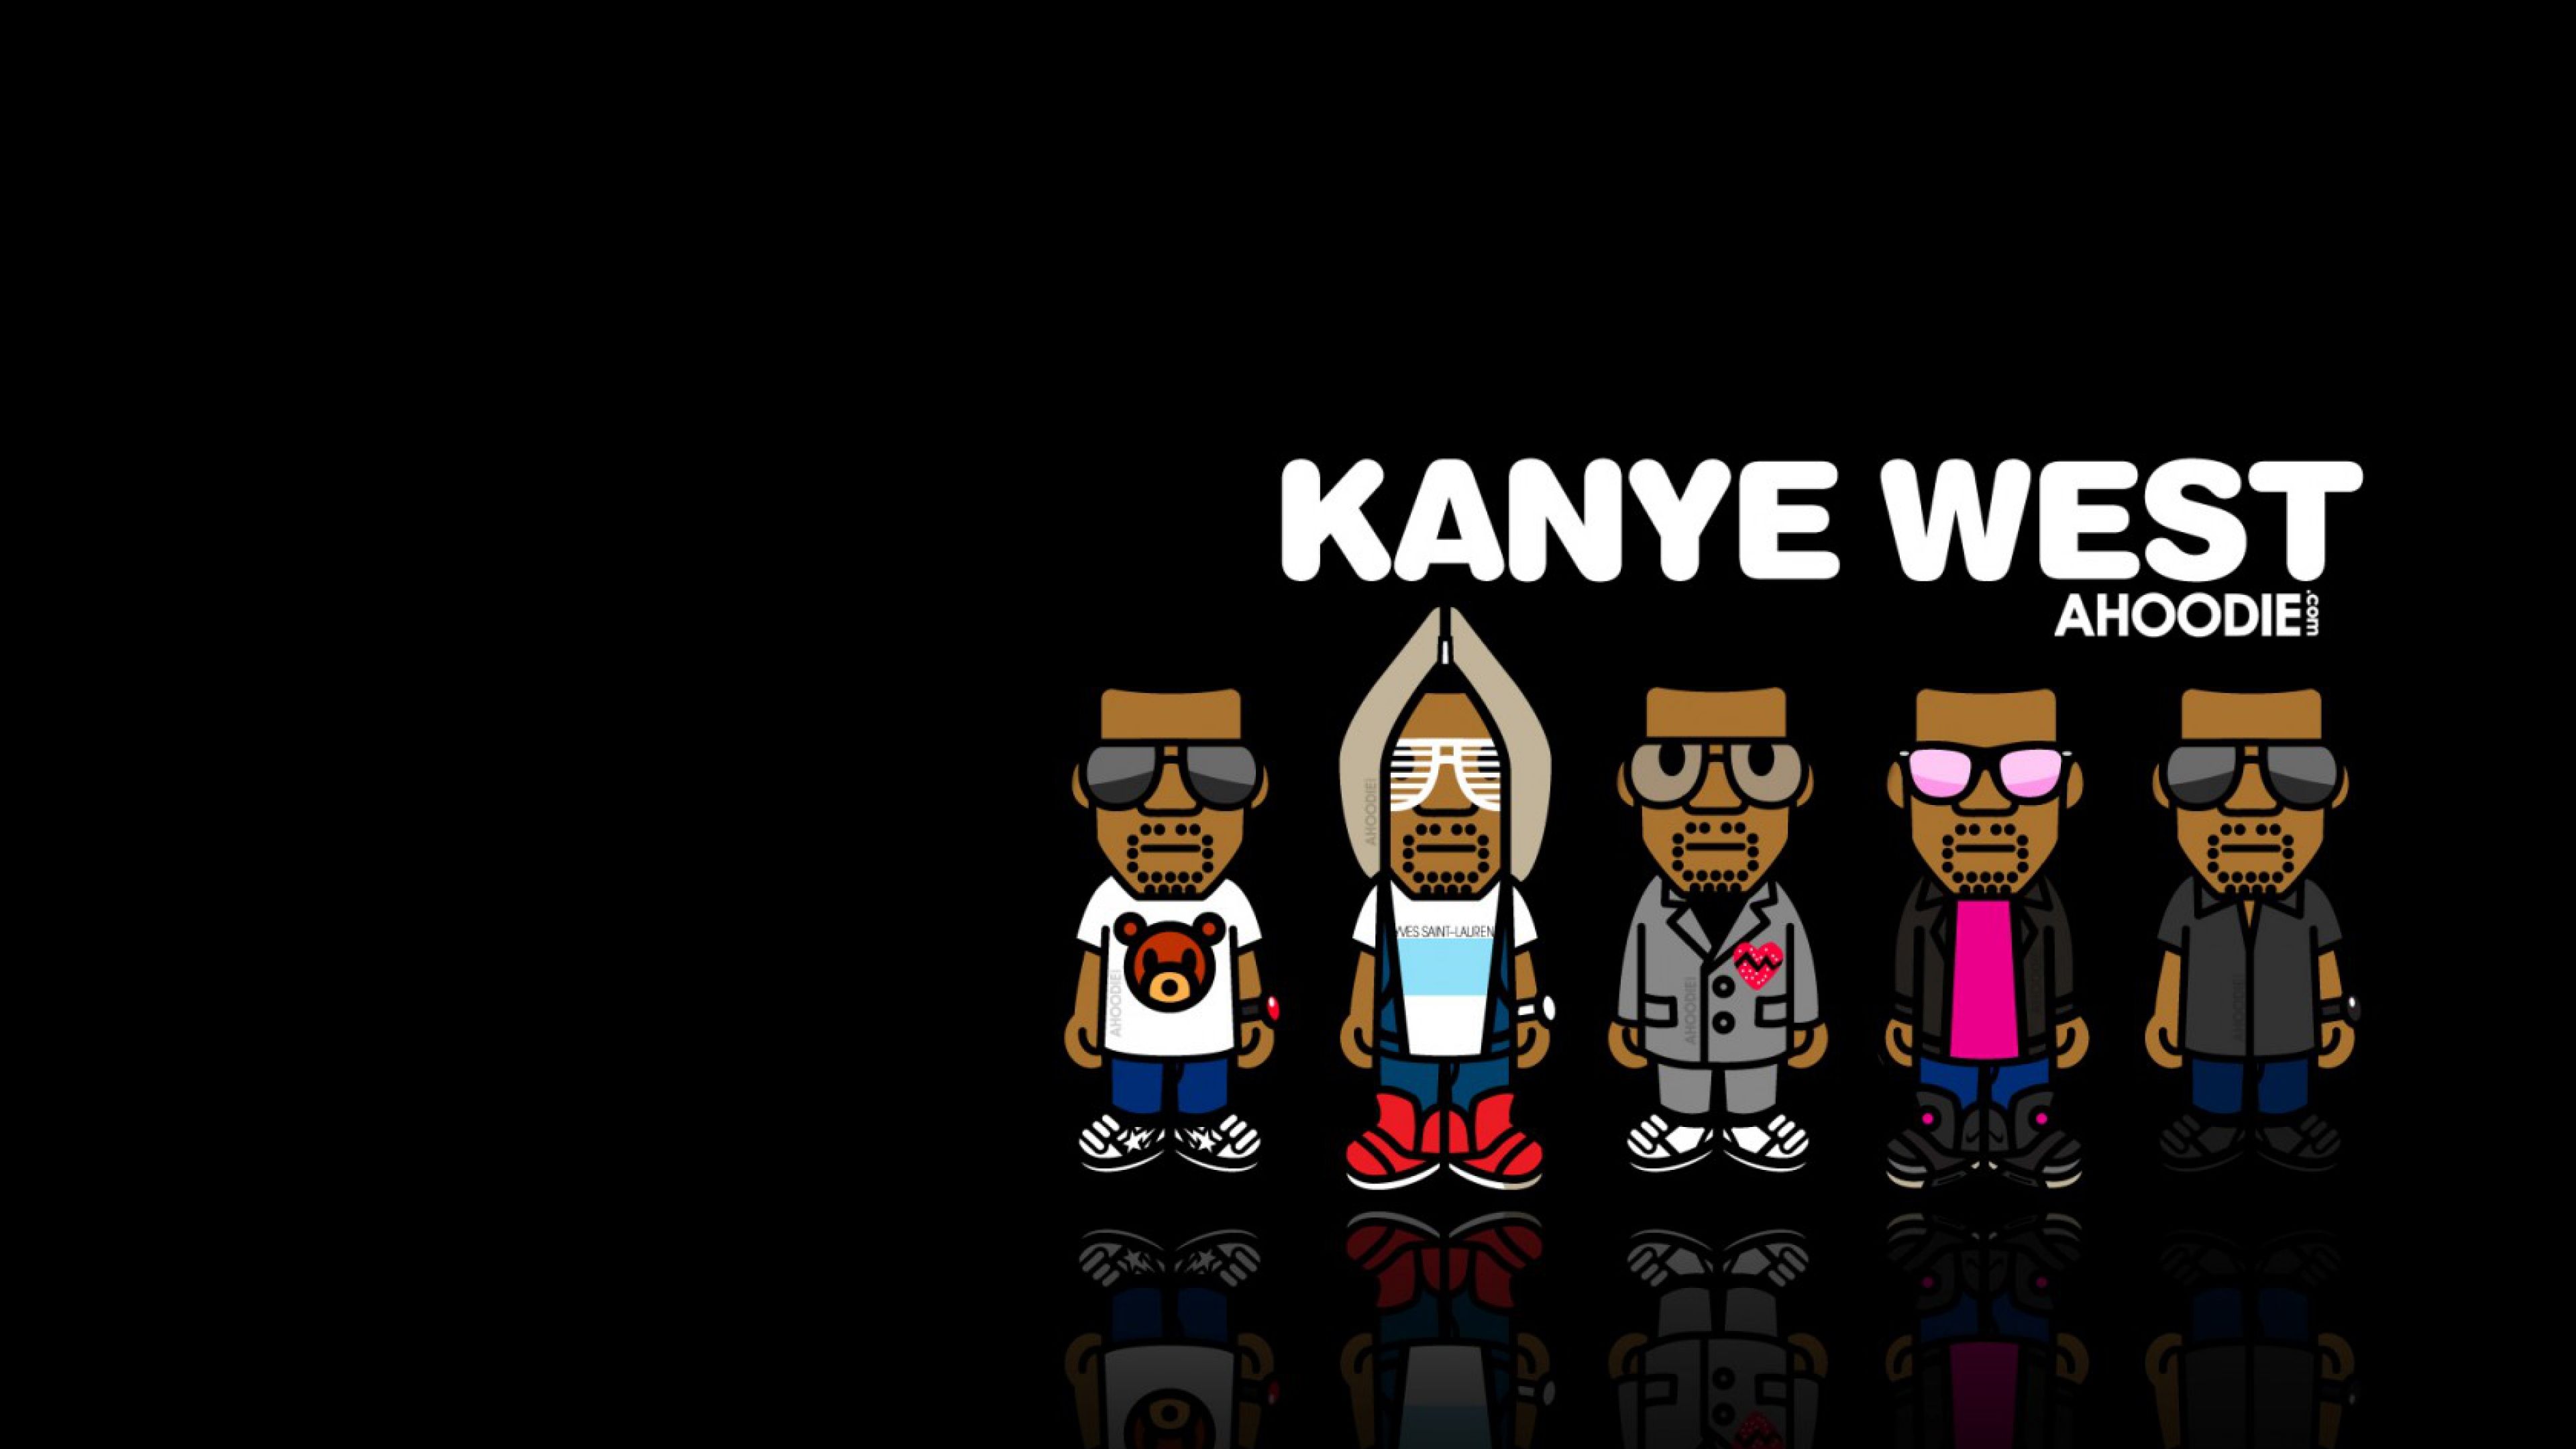 Download Wallpaper 3840x2160 Kanye west, Music, Image, Hip-hop 4K ...